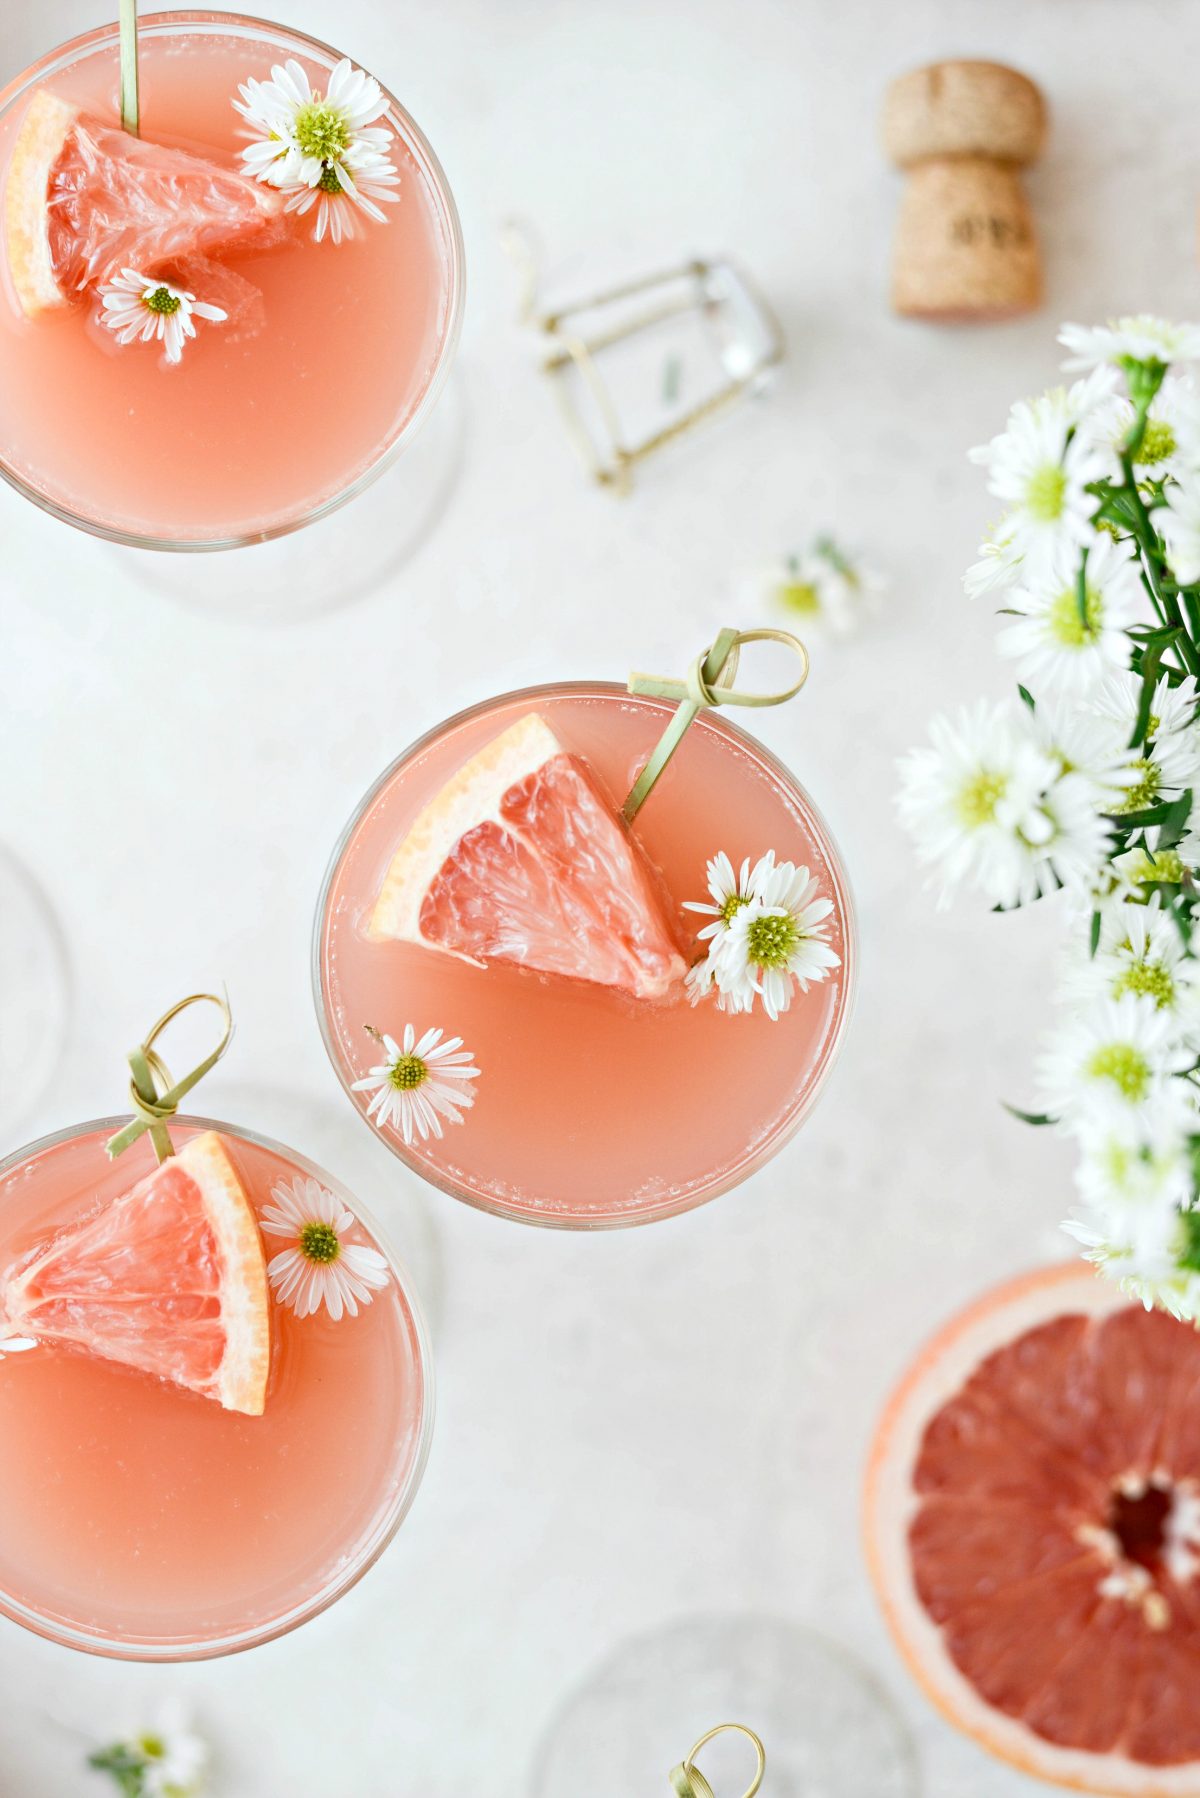 grapefrugt ros Kurt Mimosas L SimplyScratch.kom #voksen #drik # grapefrugt # rose # mimosa # påske # brunch #mothersday